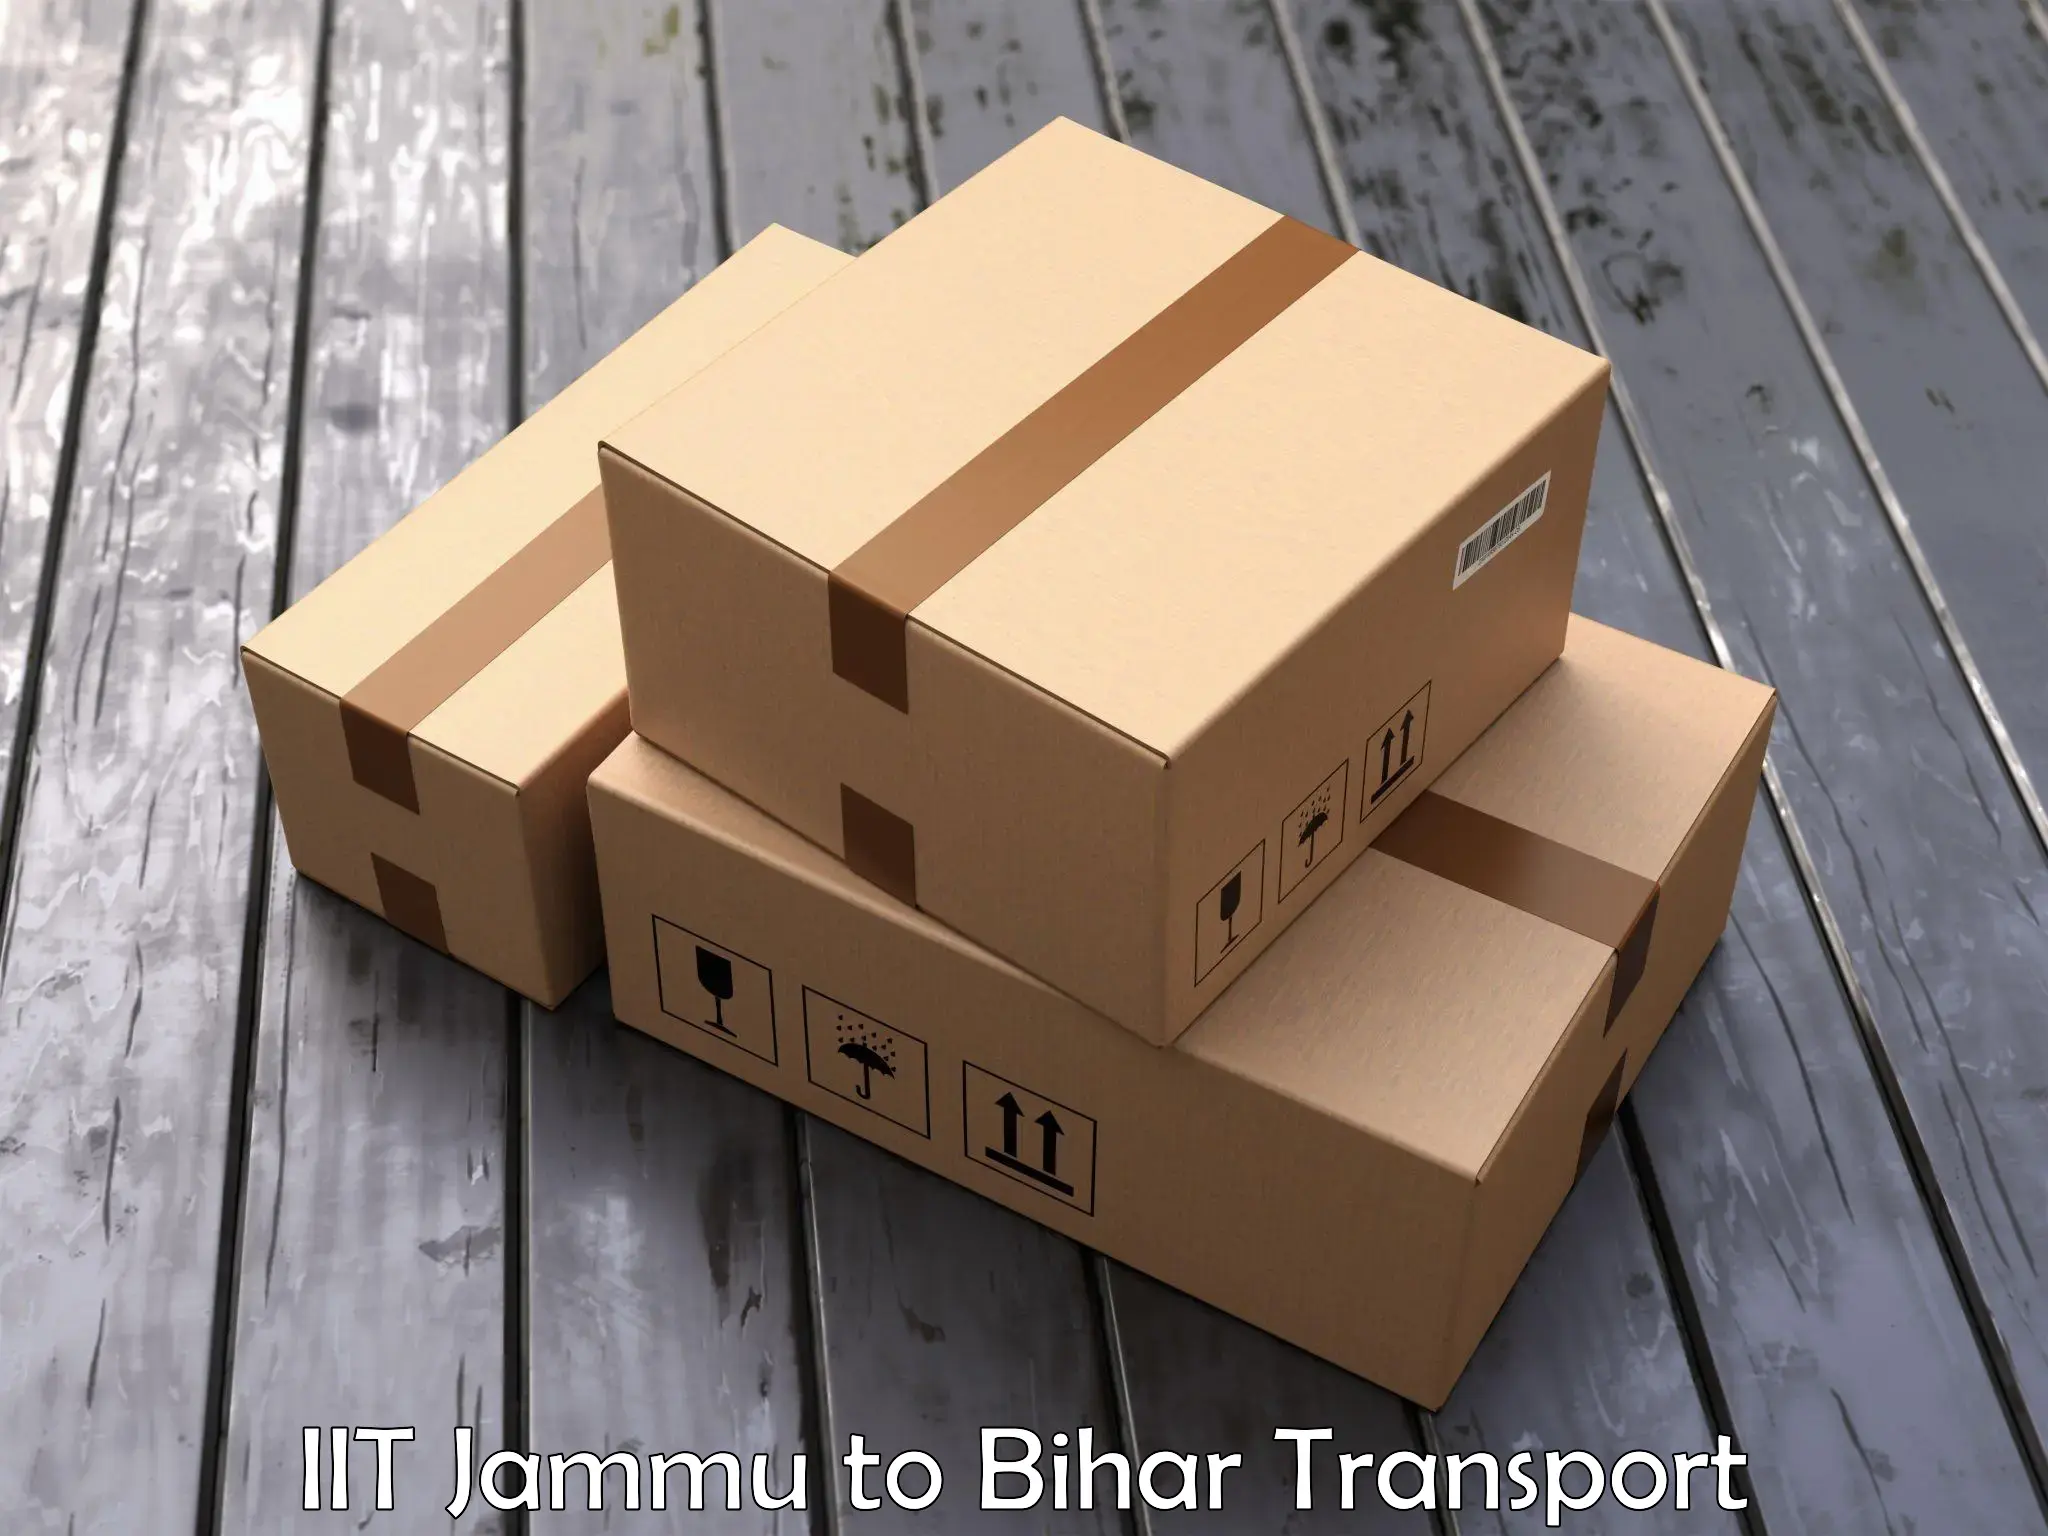 Furniture transport service IIT Jammu to Munger